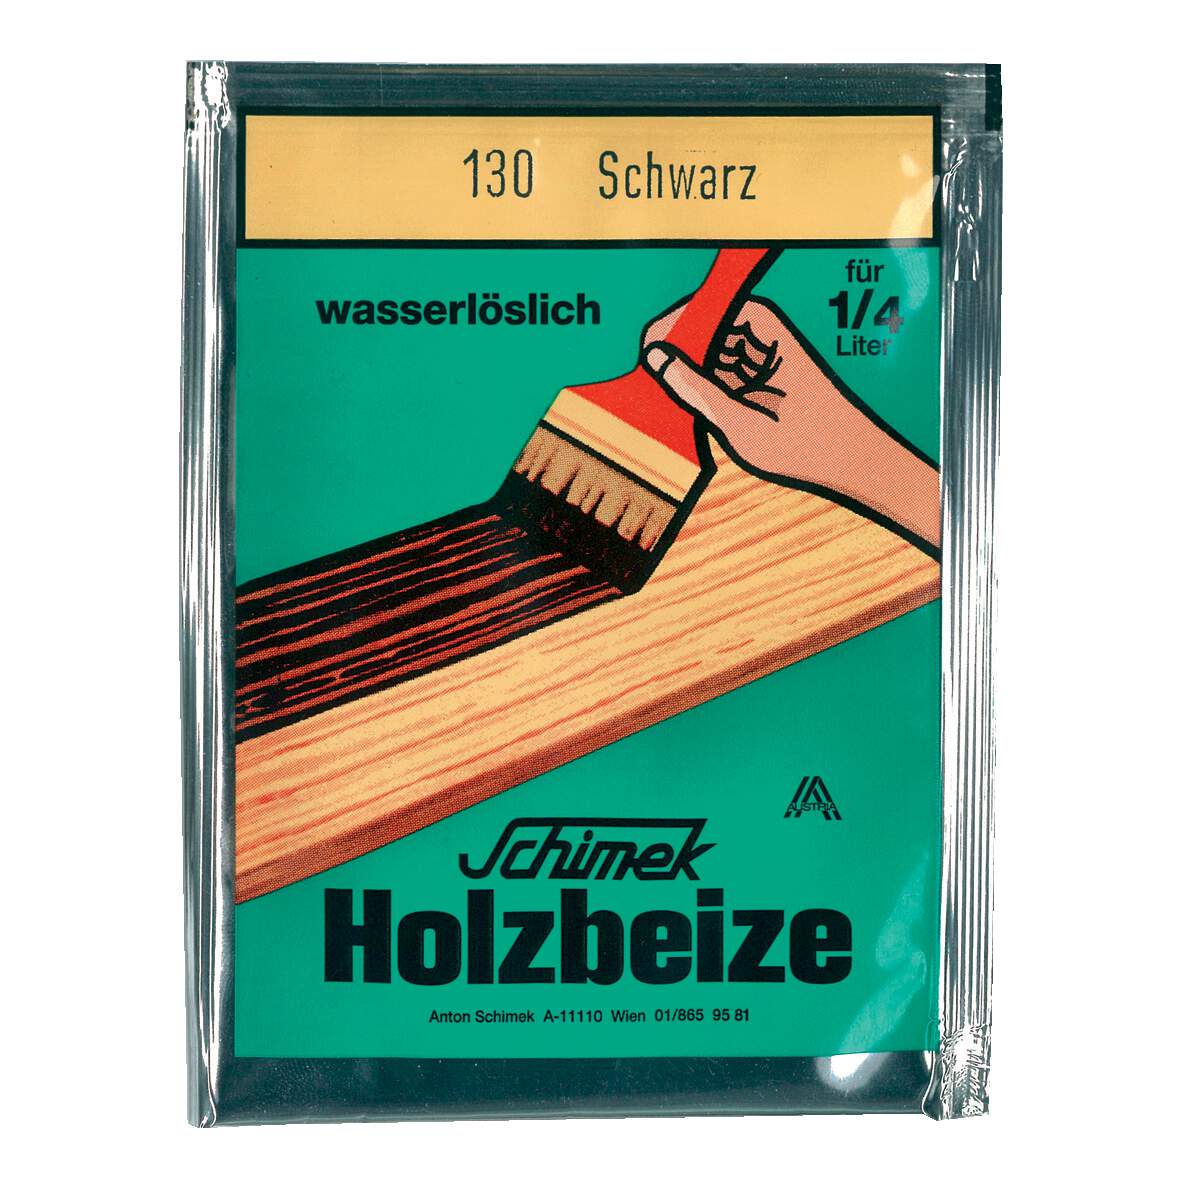 1216630 - Holzbeize wasserlöslich